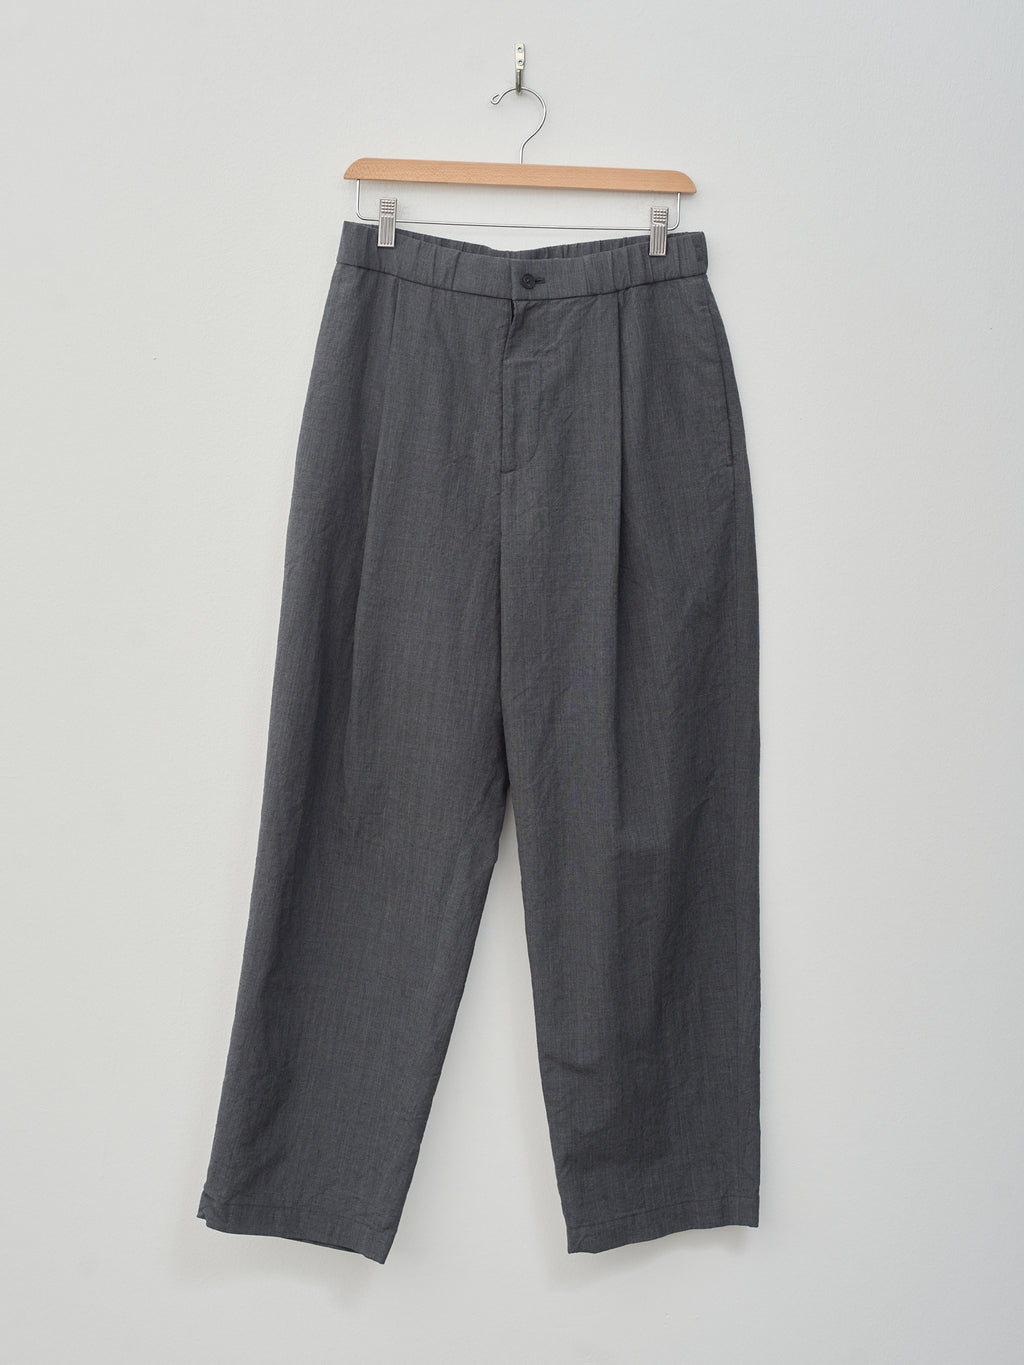 Namu Shop - Aton Wool Washi Tropical Wide Pants - Charcoal